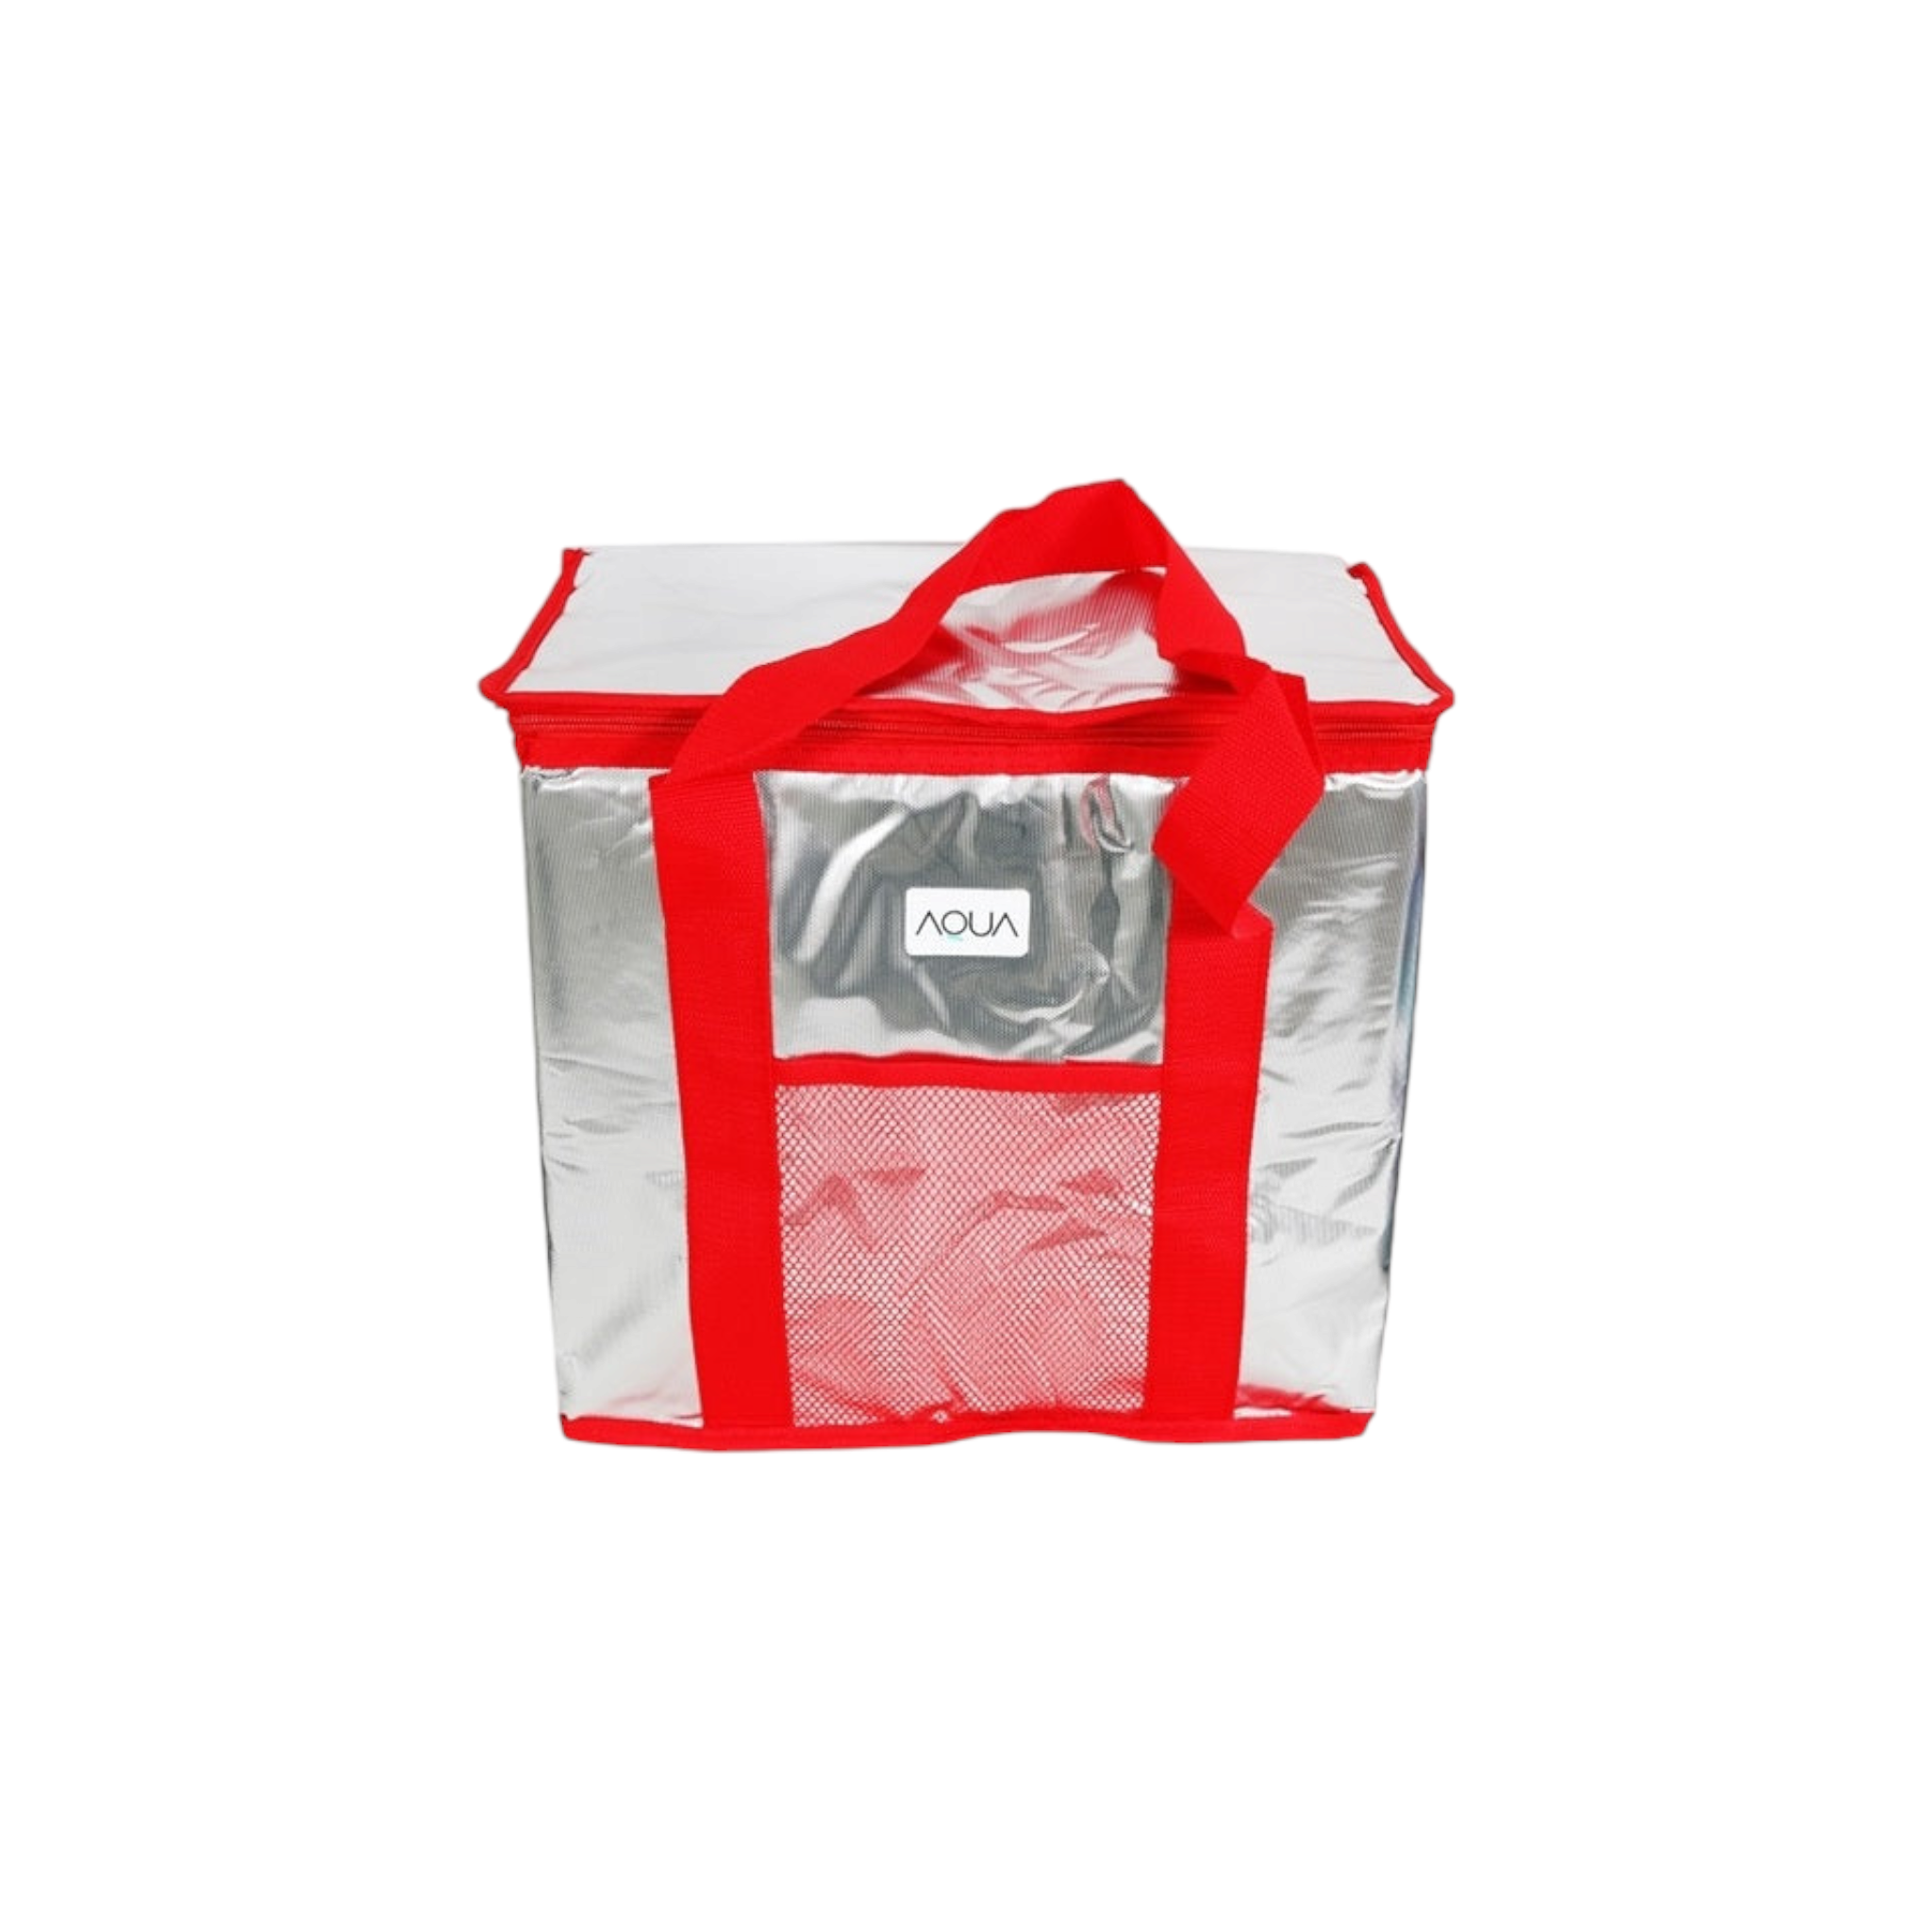 Aqua 26L Insulated Thermal Cooler Picnic Bag 34509